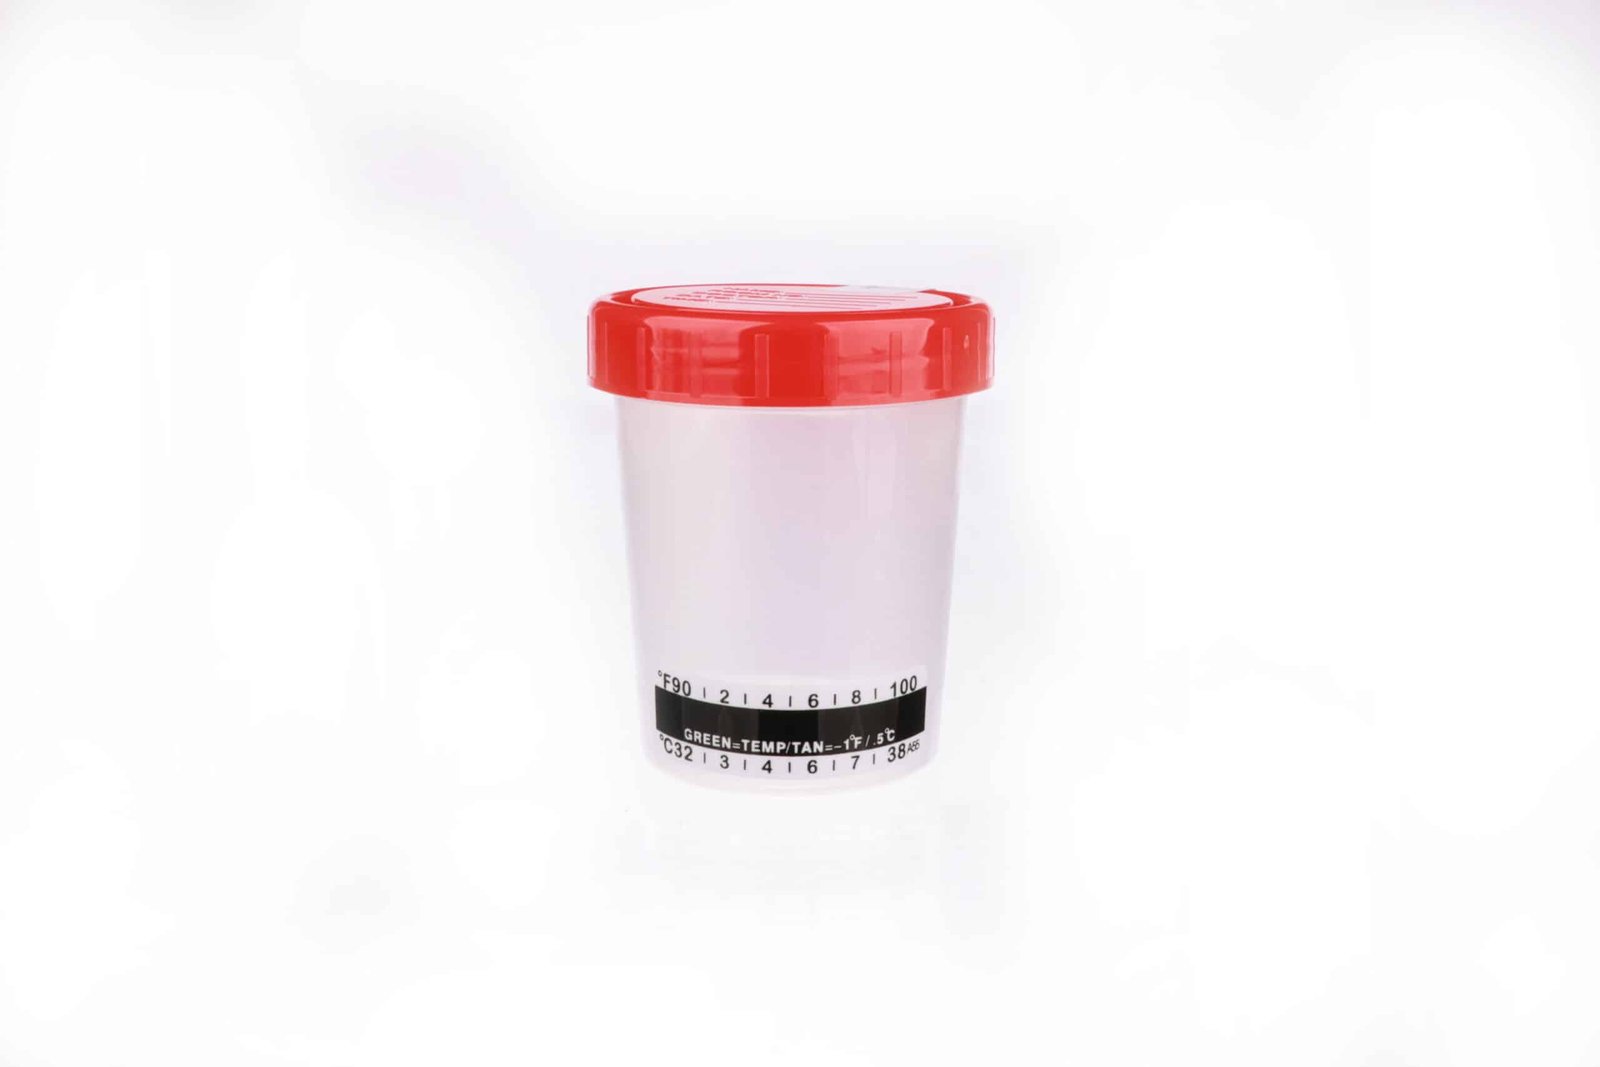 Urine Specimen Cups With Temperature Strip